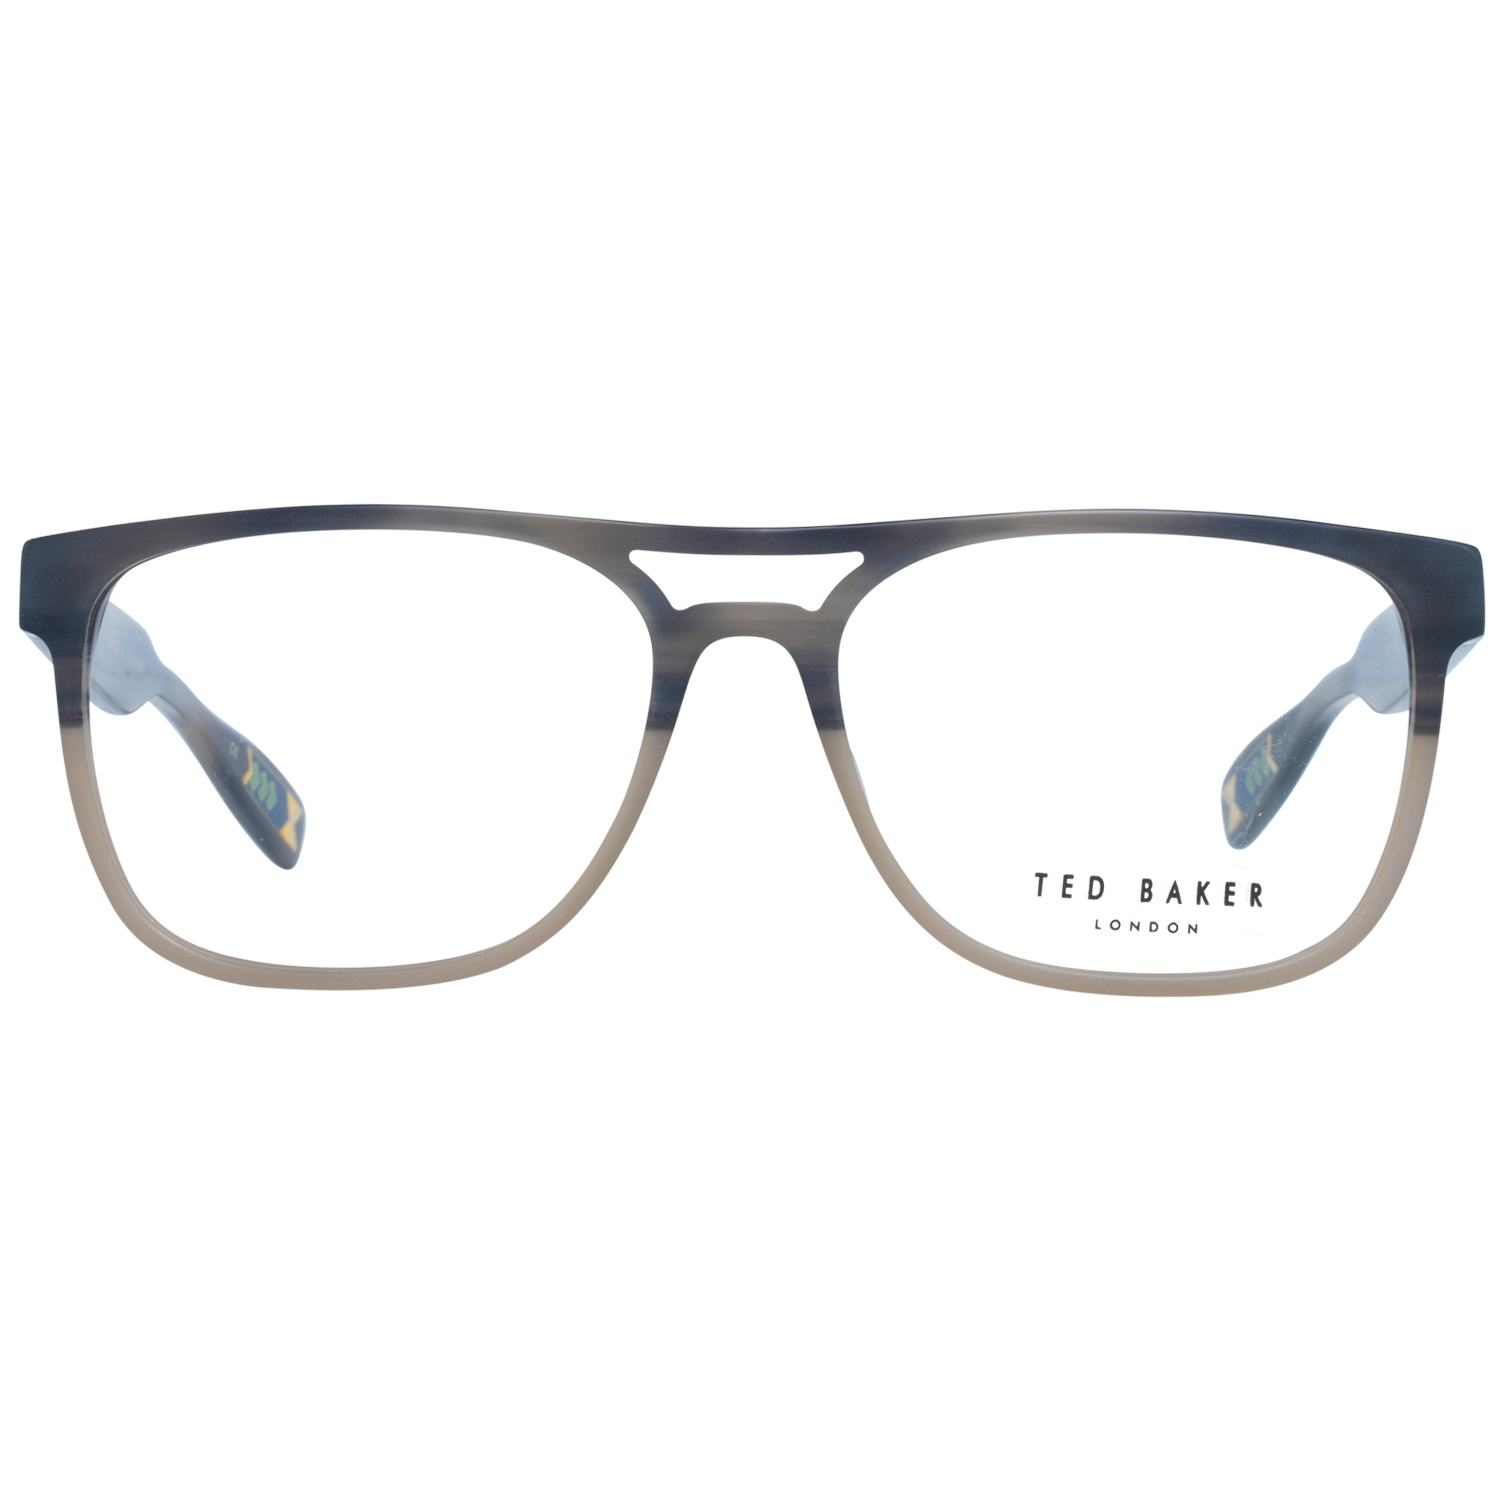 Ted Baker Frames Ted Baker Optical Frame Prescription Glasses TB8207 960 56 Eyeglasses Eyewear UK USA Australia 